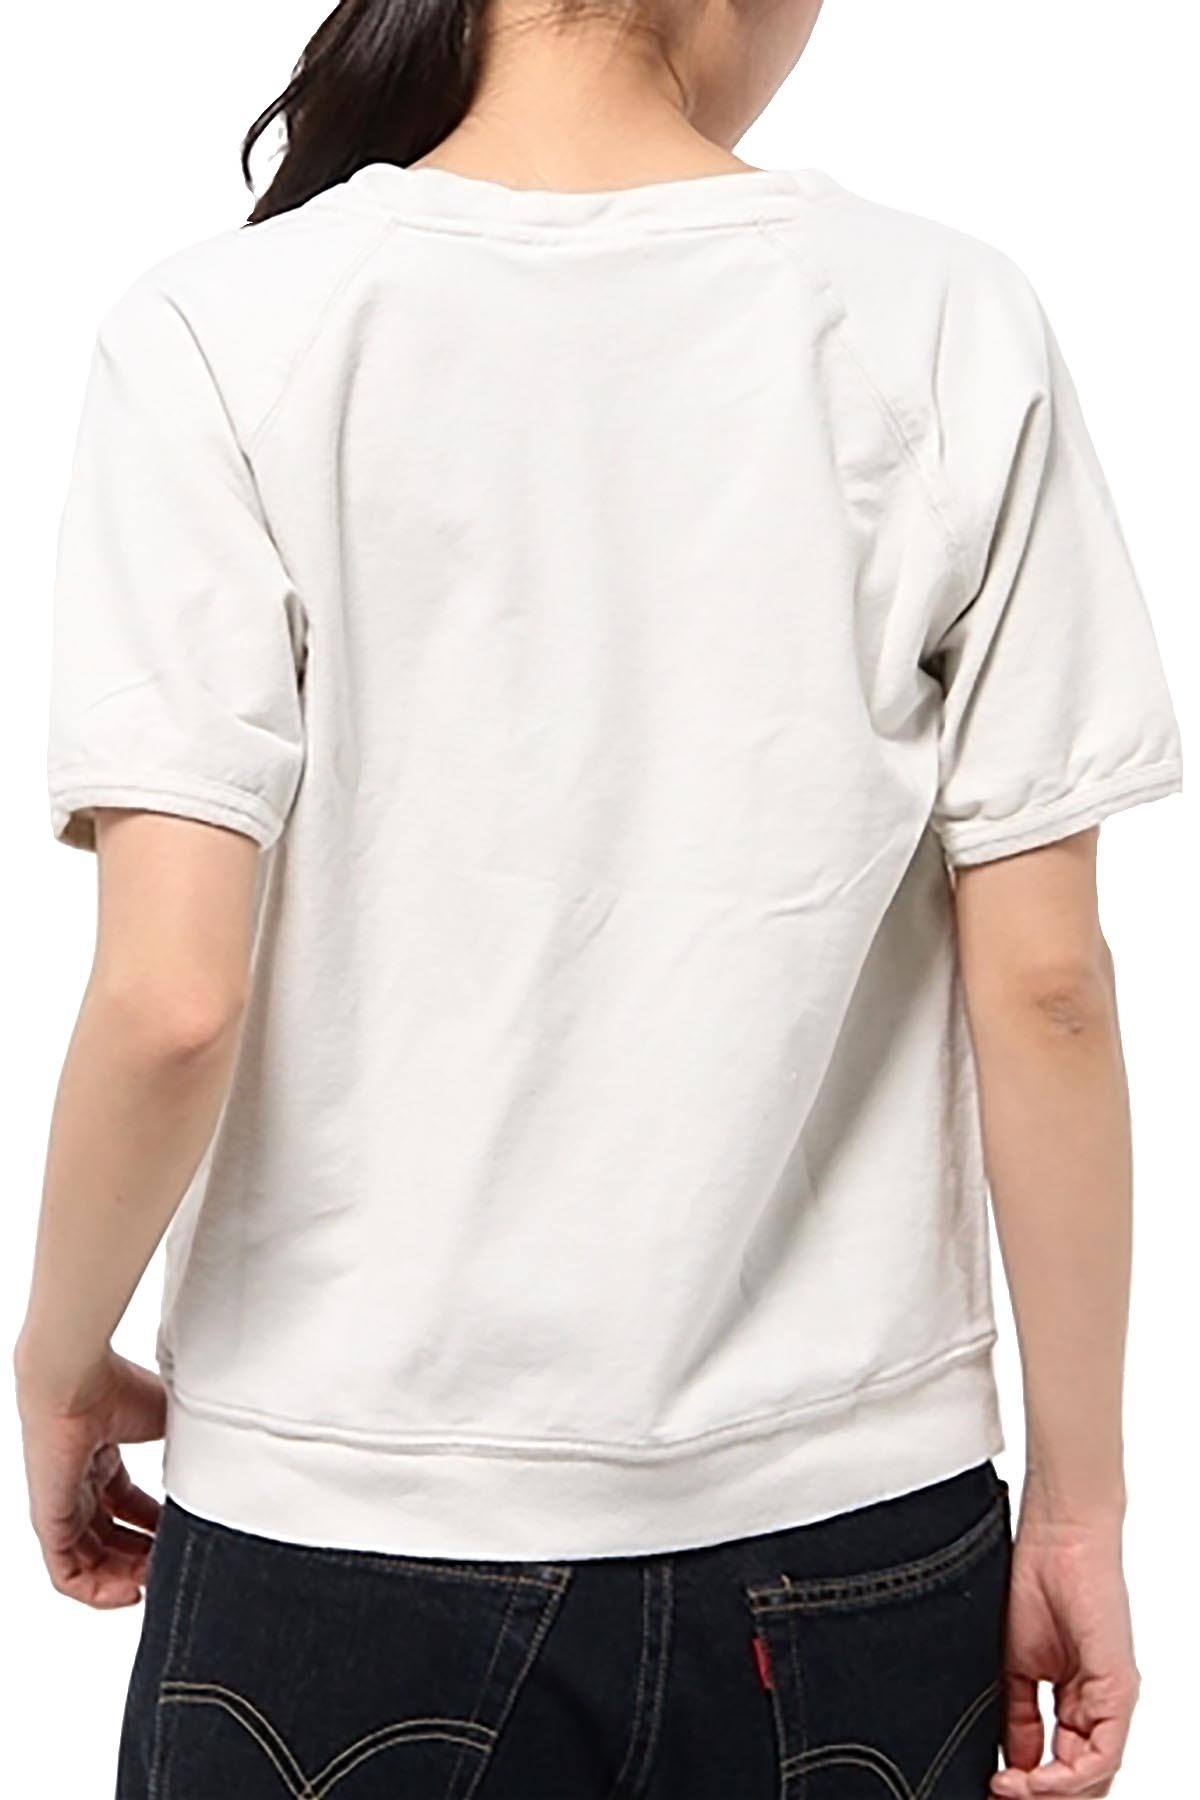 Rxmance Unisex White Sand USA Aerobics Short Sleeve Sweatshirt